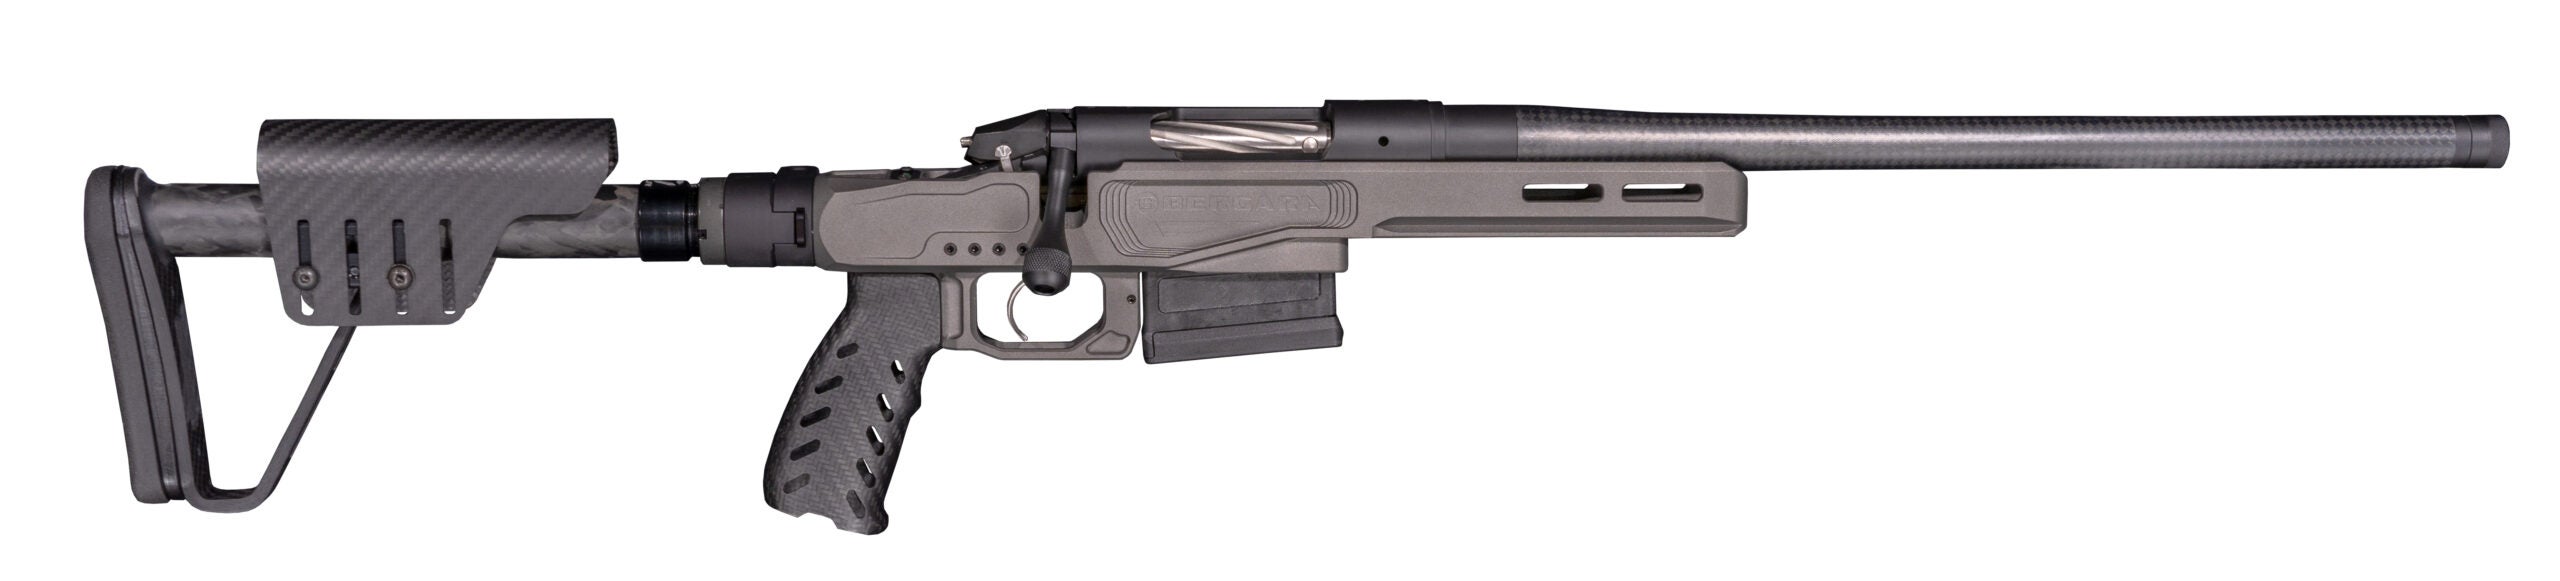 Bergara MG Microlite rifle on a white background